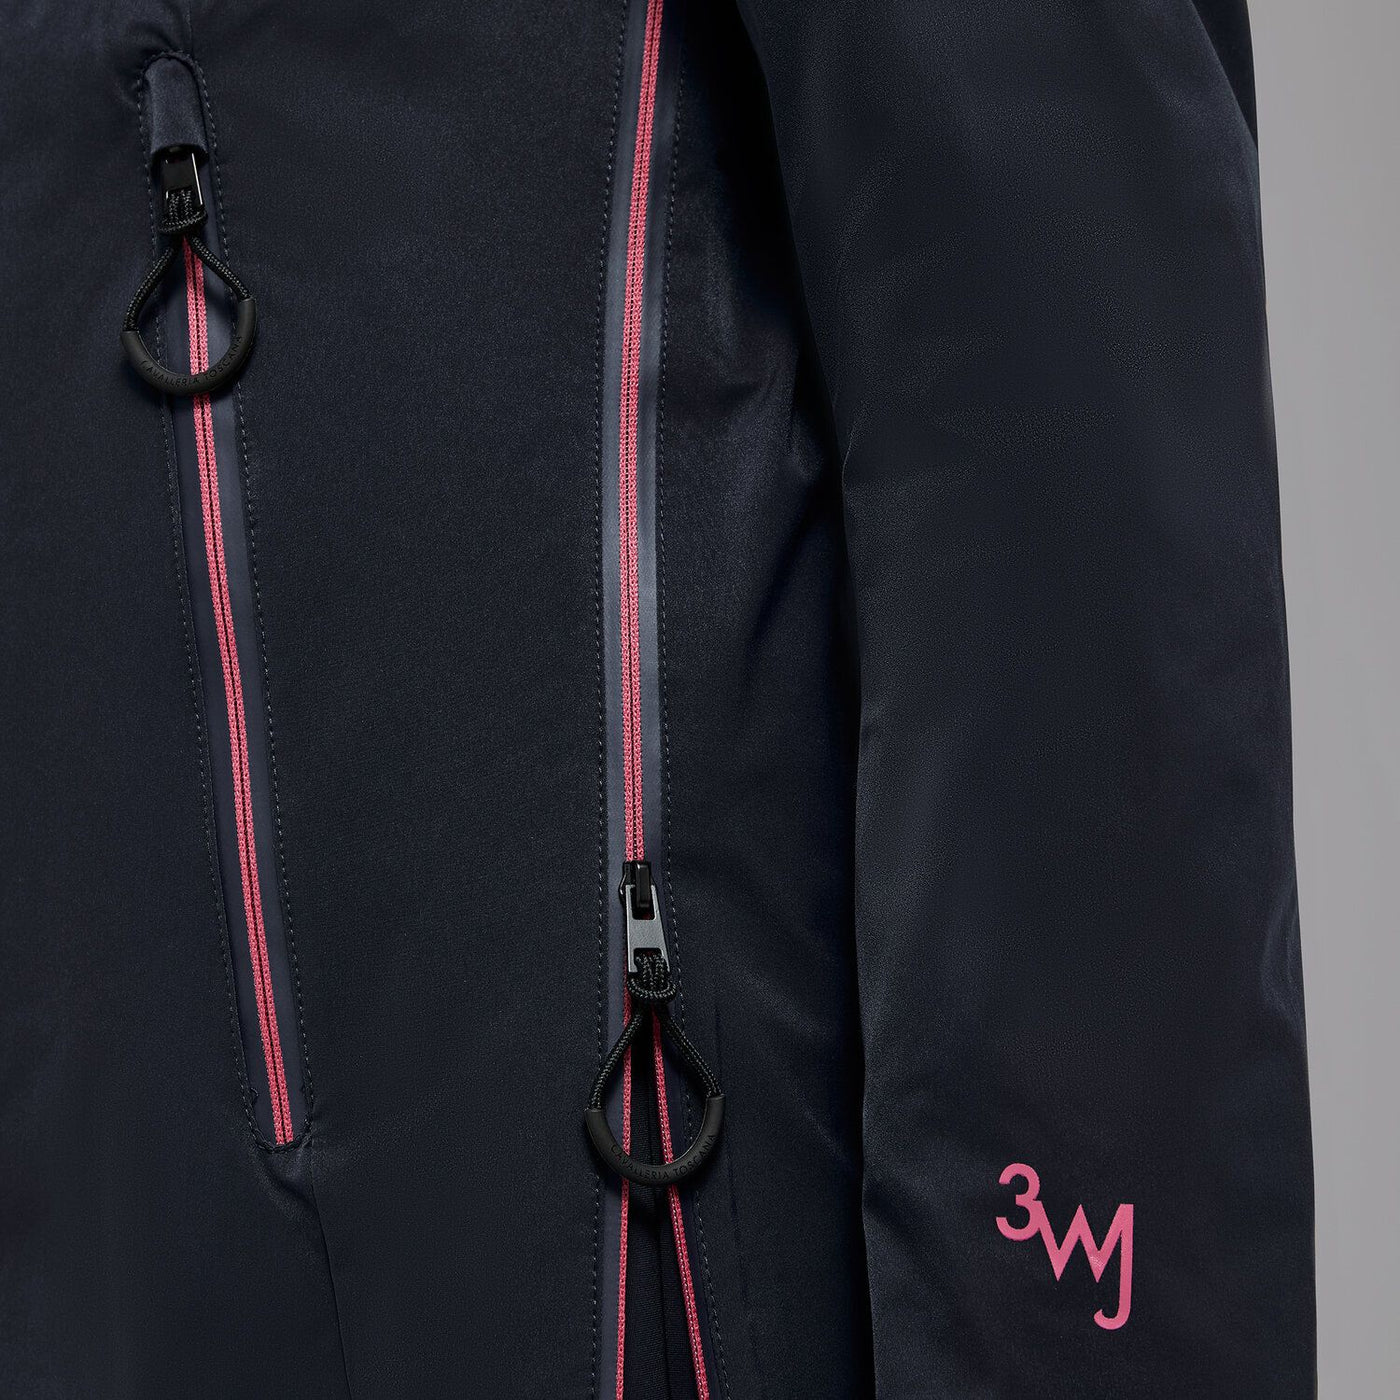 REVO 3-Way Hooded Waterproof Jacket